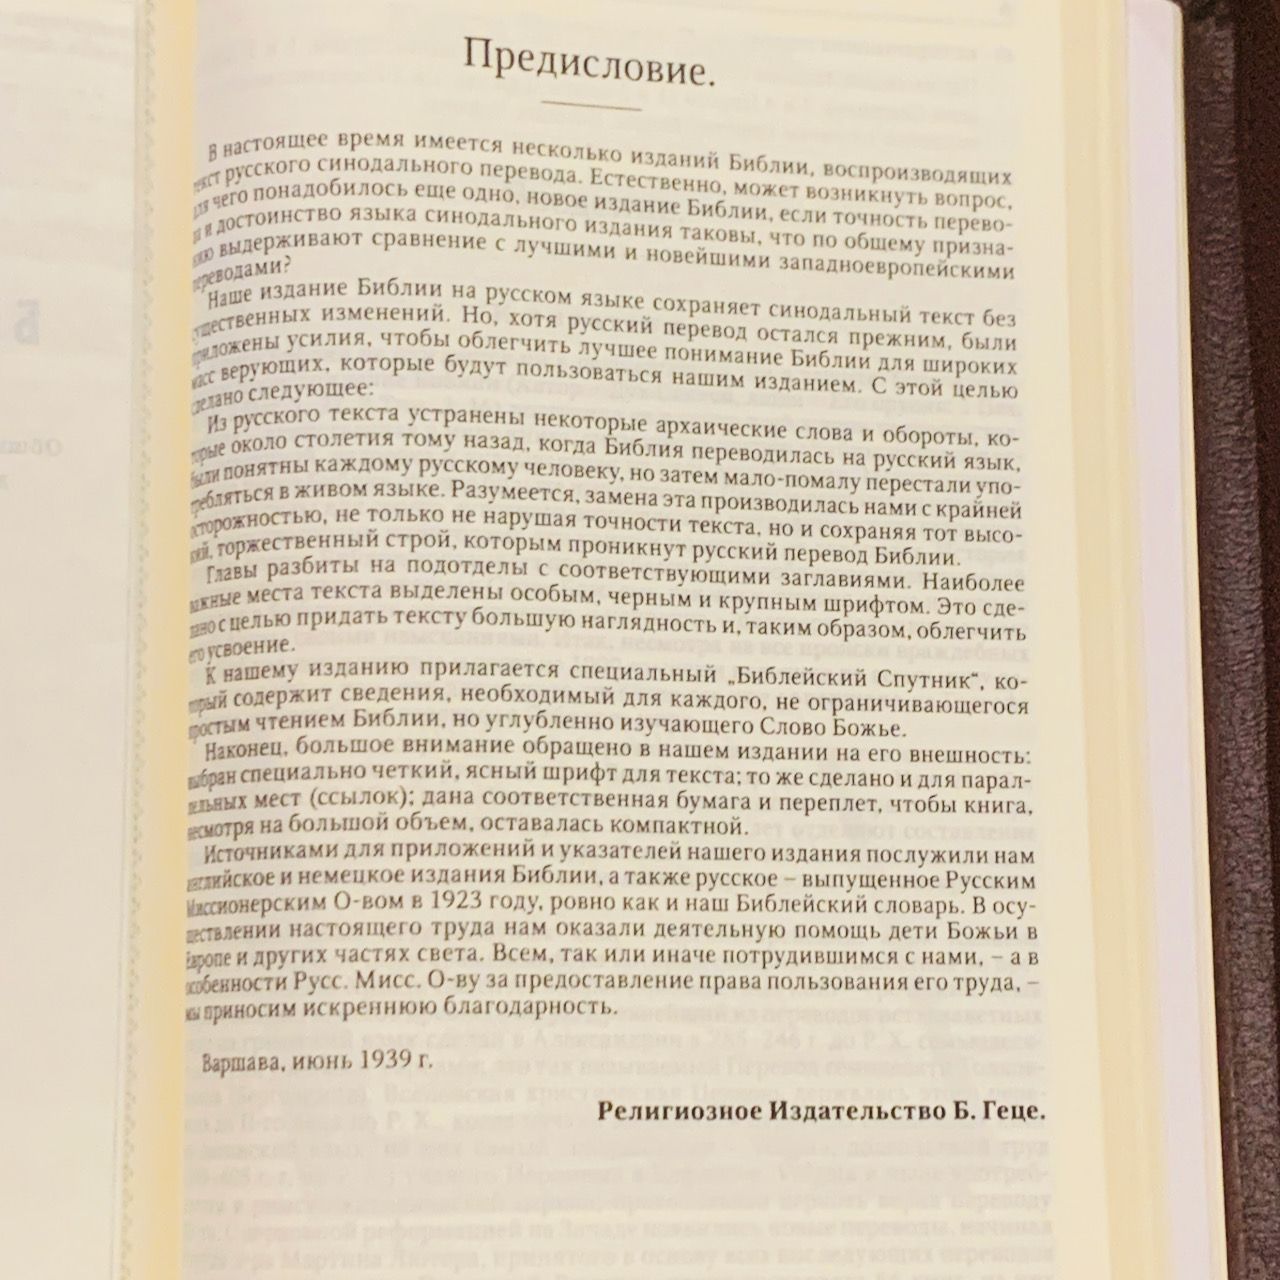 Библия Геце "с оливковой ветвью" 063z формат  (145*215 мм), прошитая, цвет бордо, кожаный переплет на молнии, золотые страницы, код 11671 (11673)